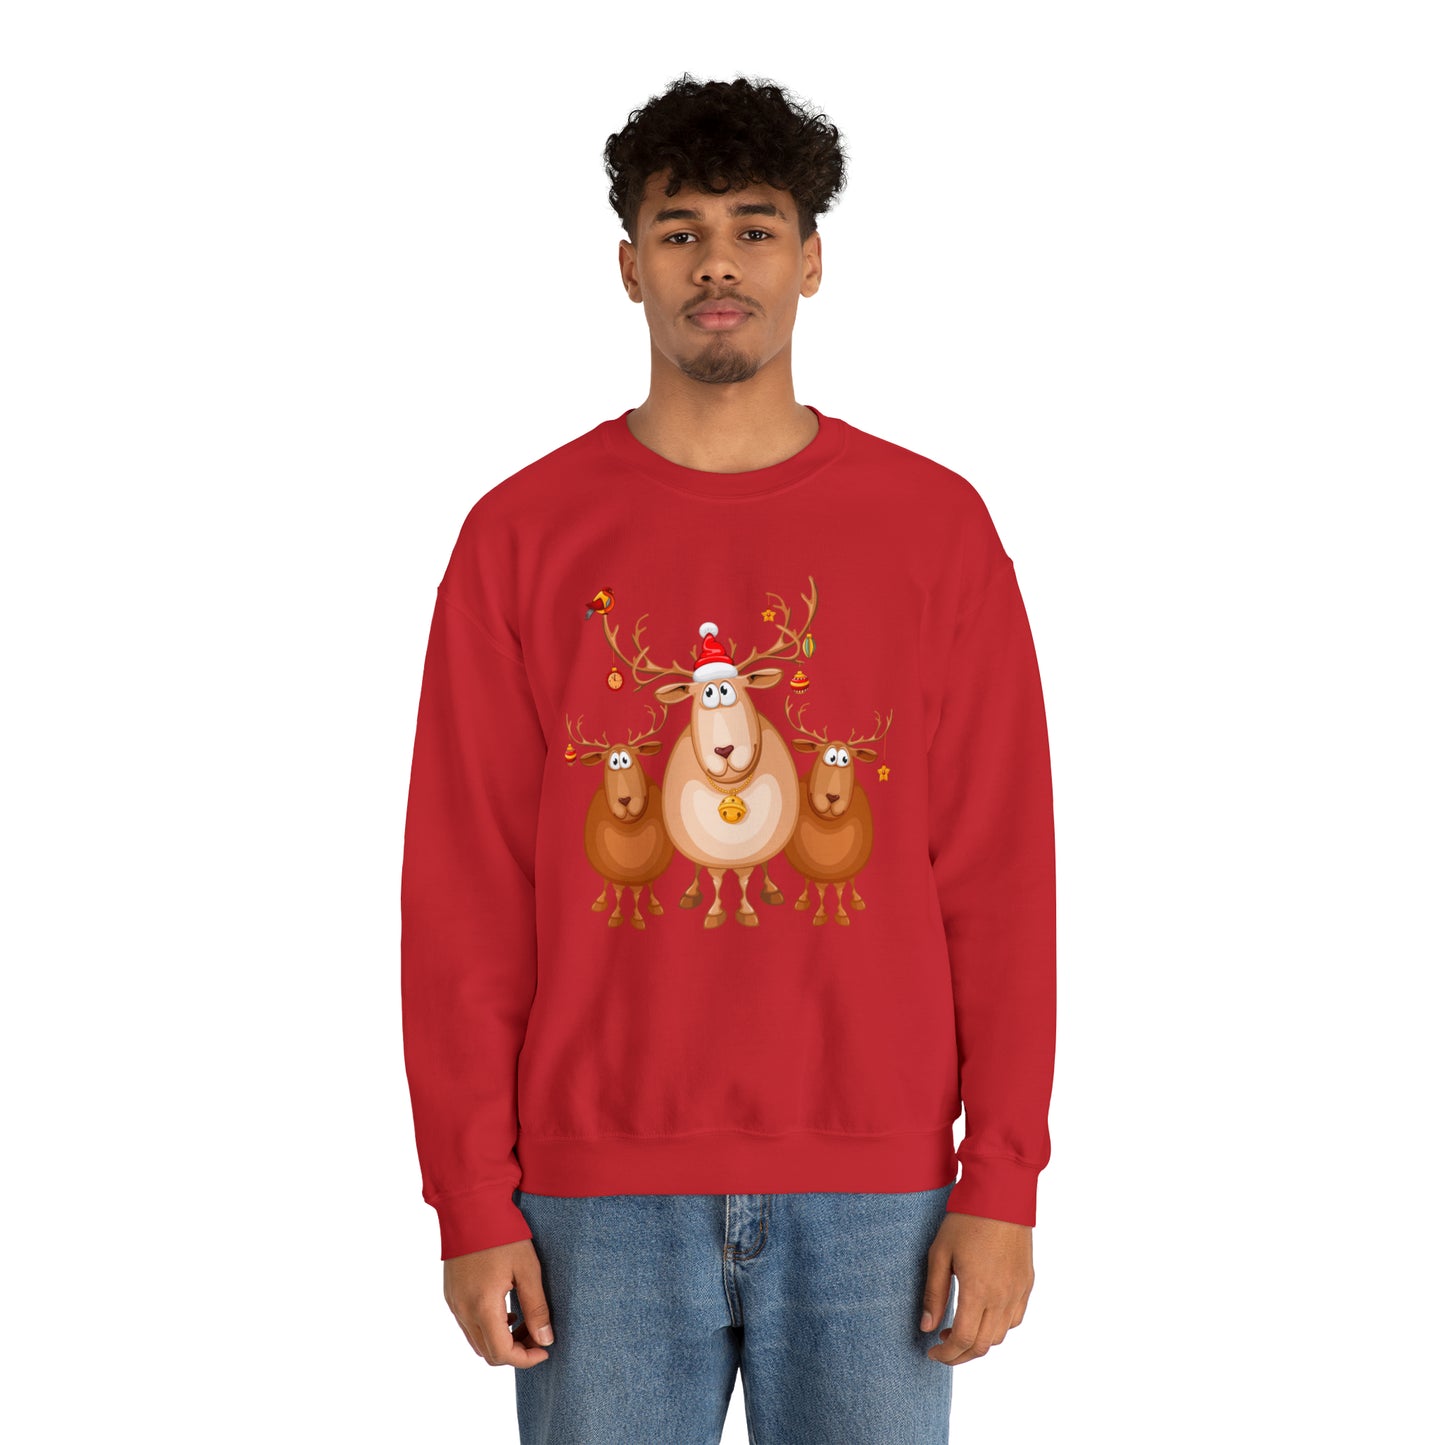 Reindeer Games Crewneck Sweatshirt